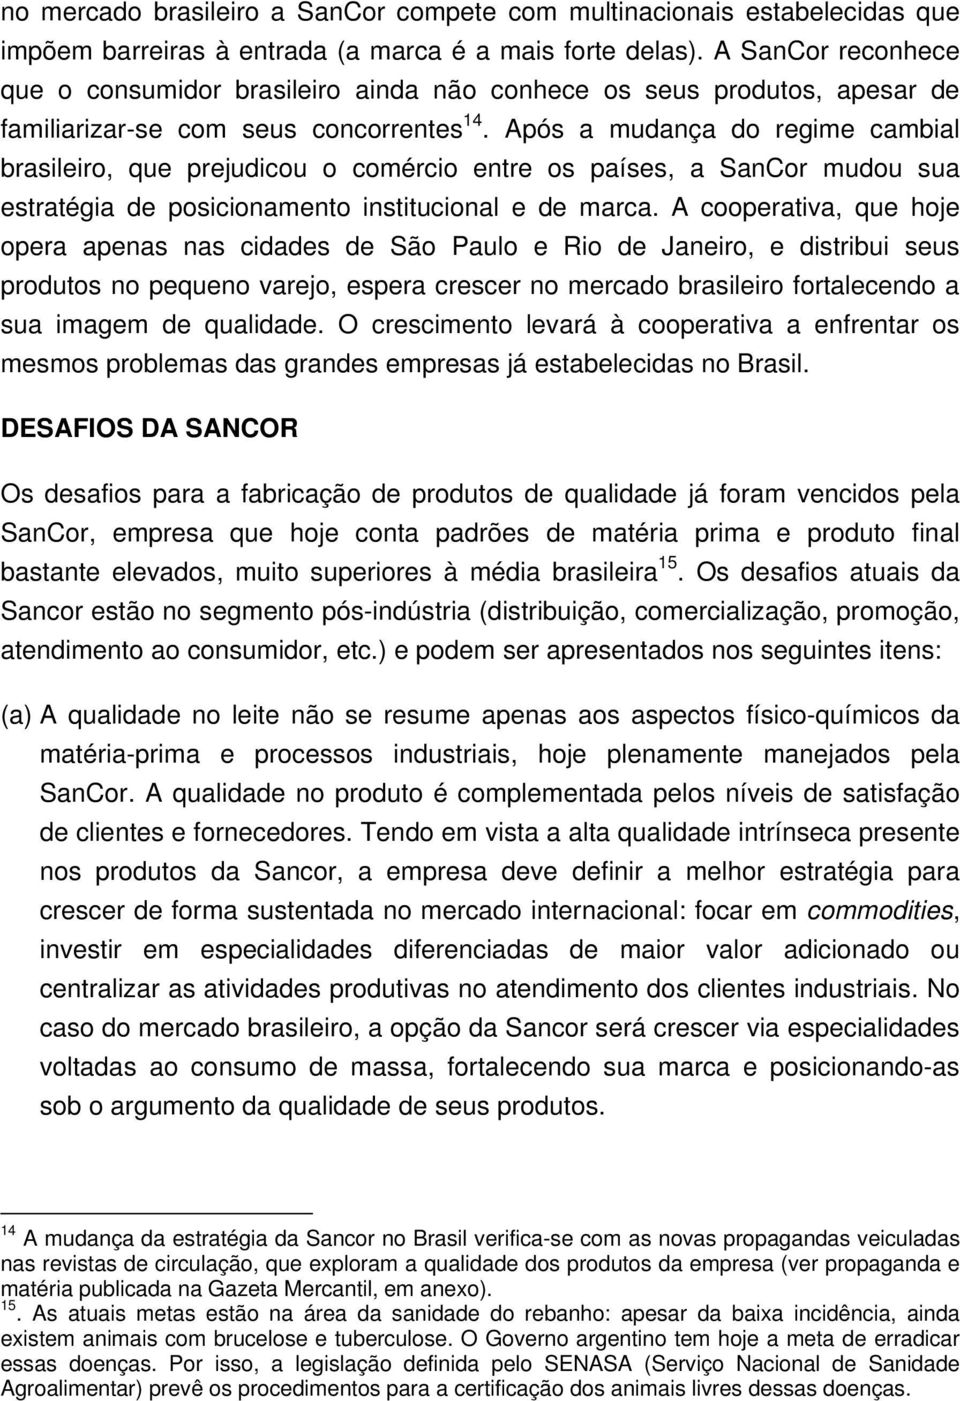 Após a mudança do regime cambial brasileiro, que prejudicou o comércio entre os países, a SanCor mudou sua estratégia de posicionamento institucional e de marca.